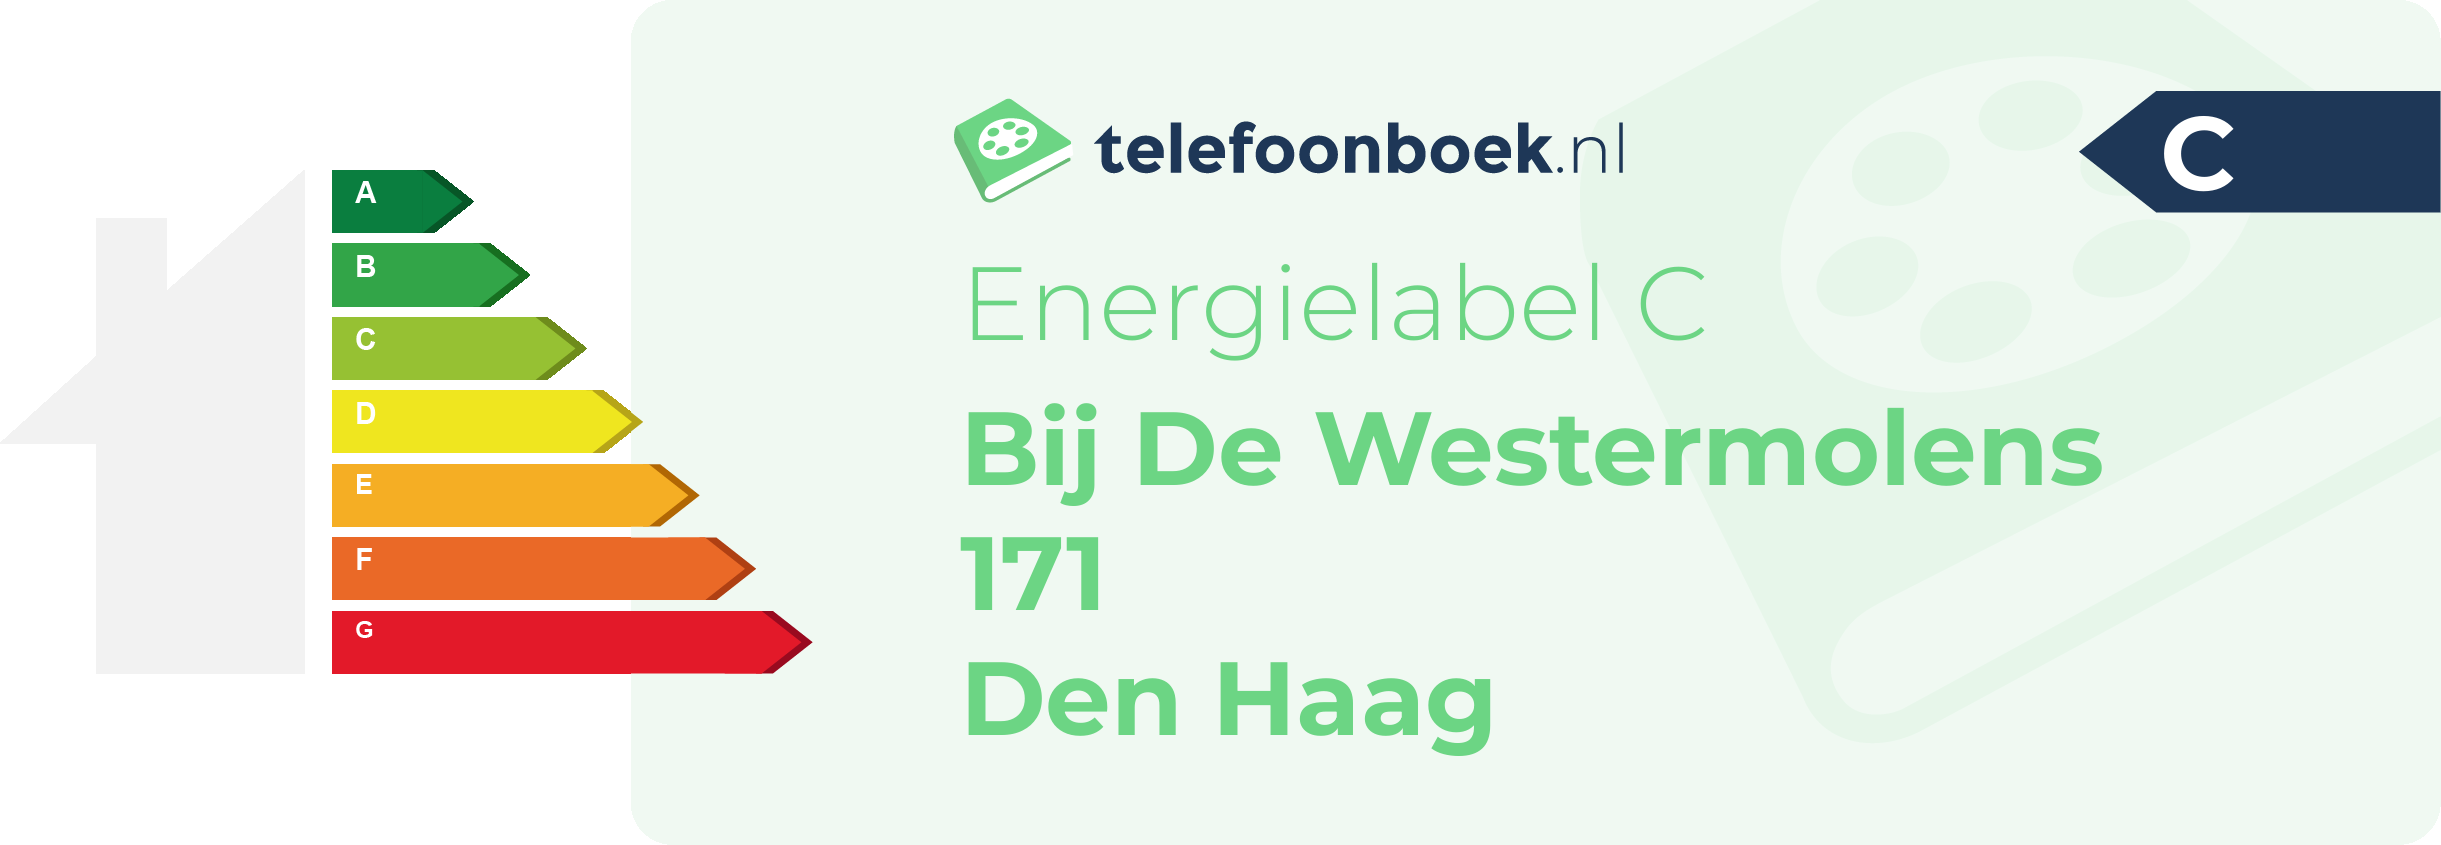 Energielabel Bij De Westermolens 171 Den Haag